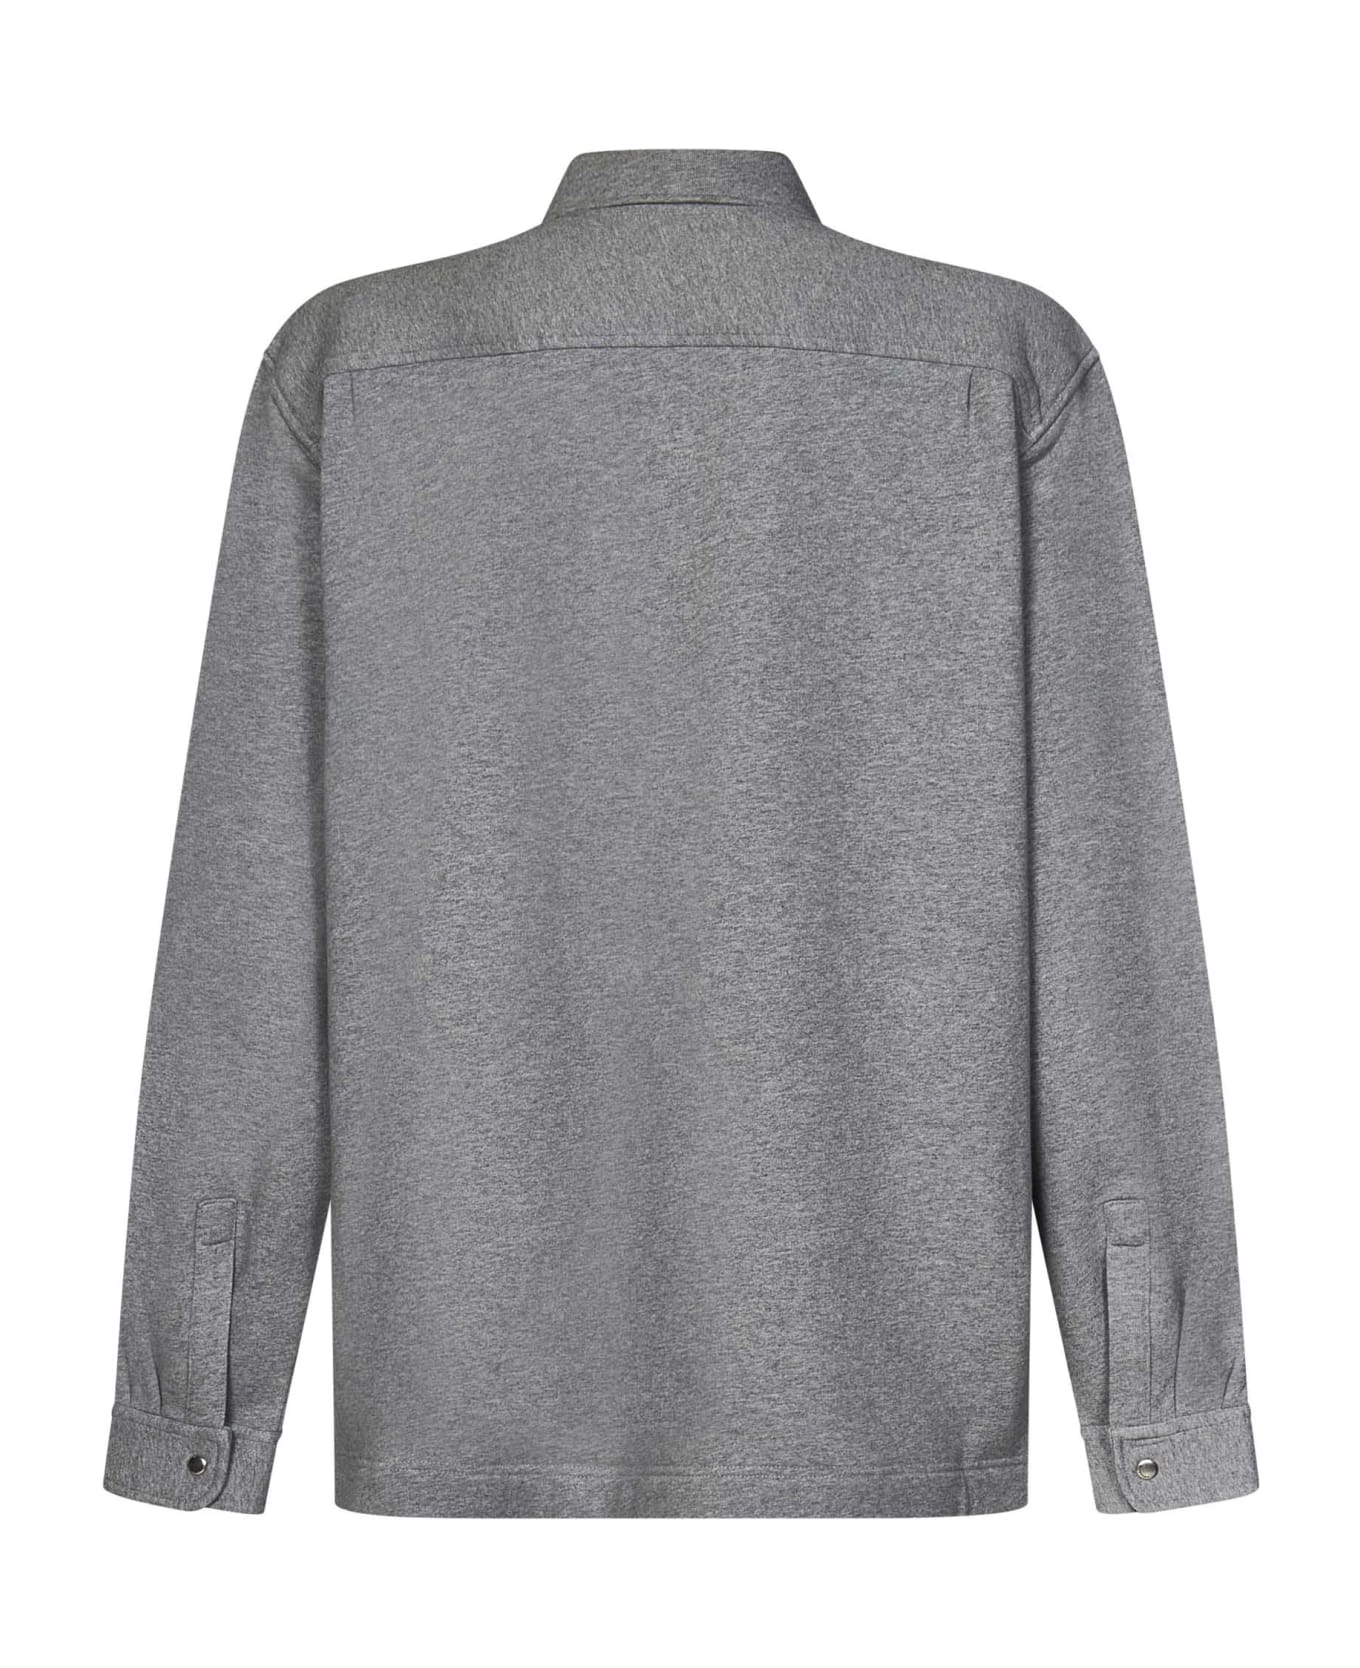 Givenchy Shirt - Grey シャツ